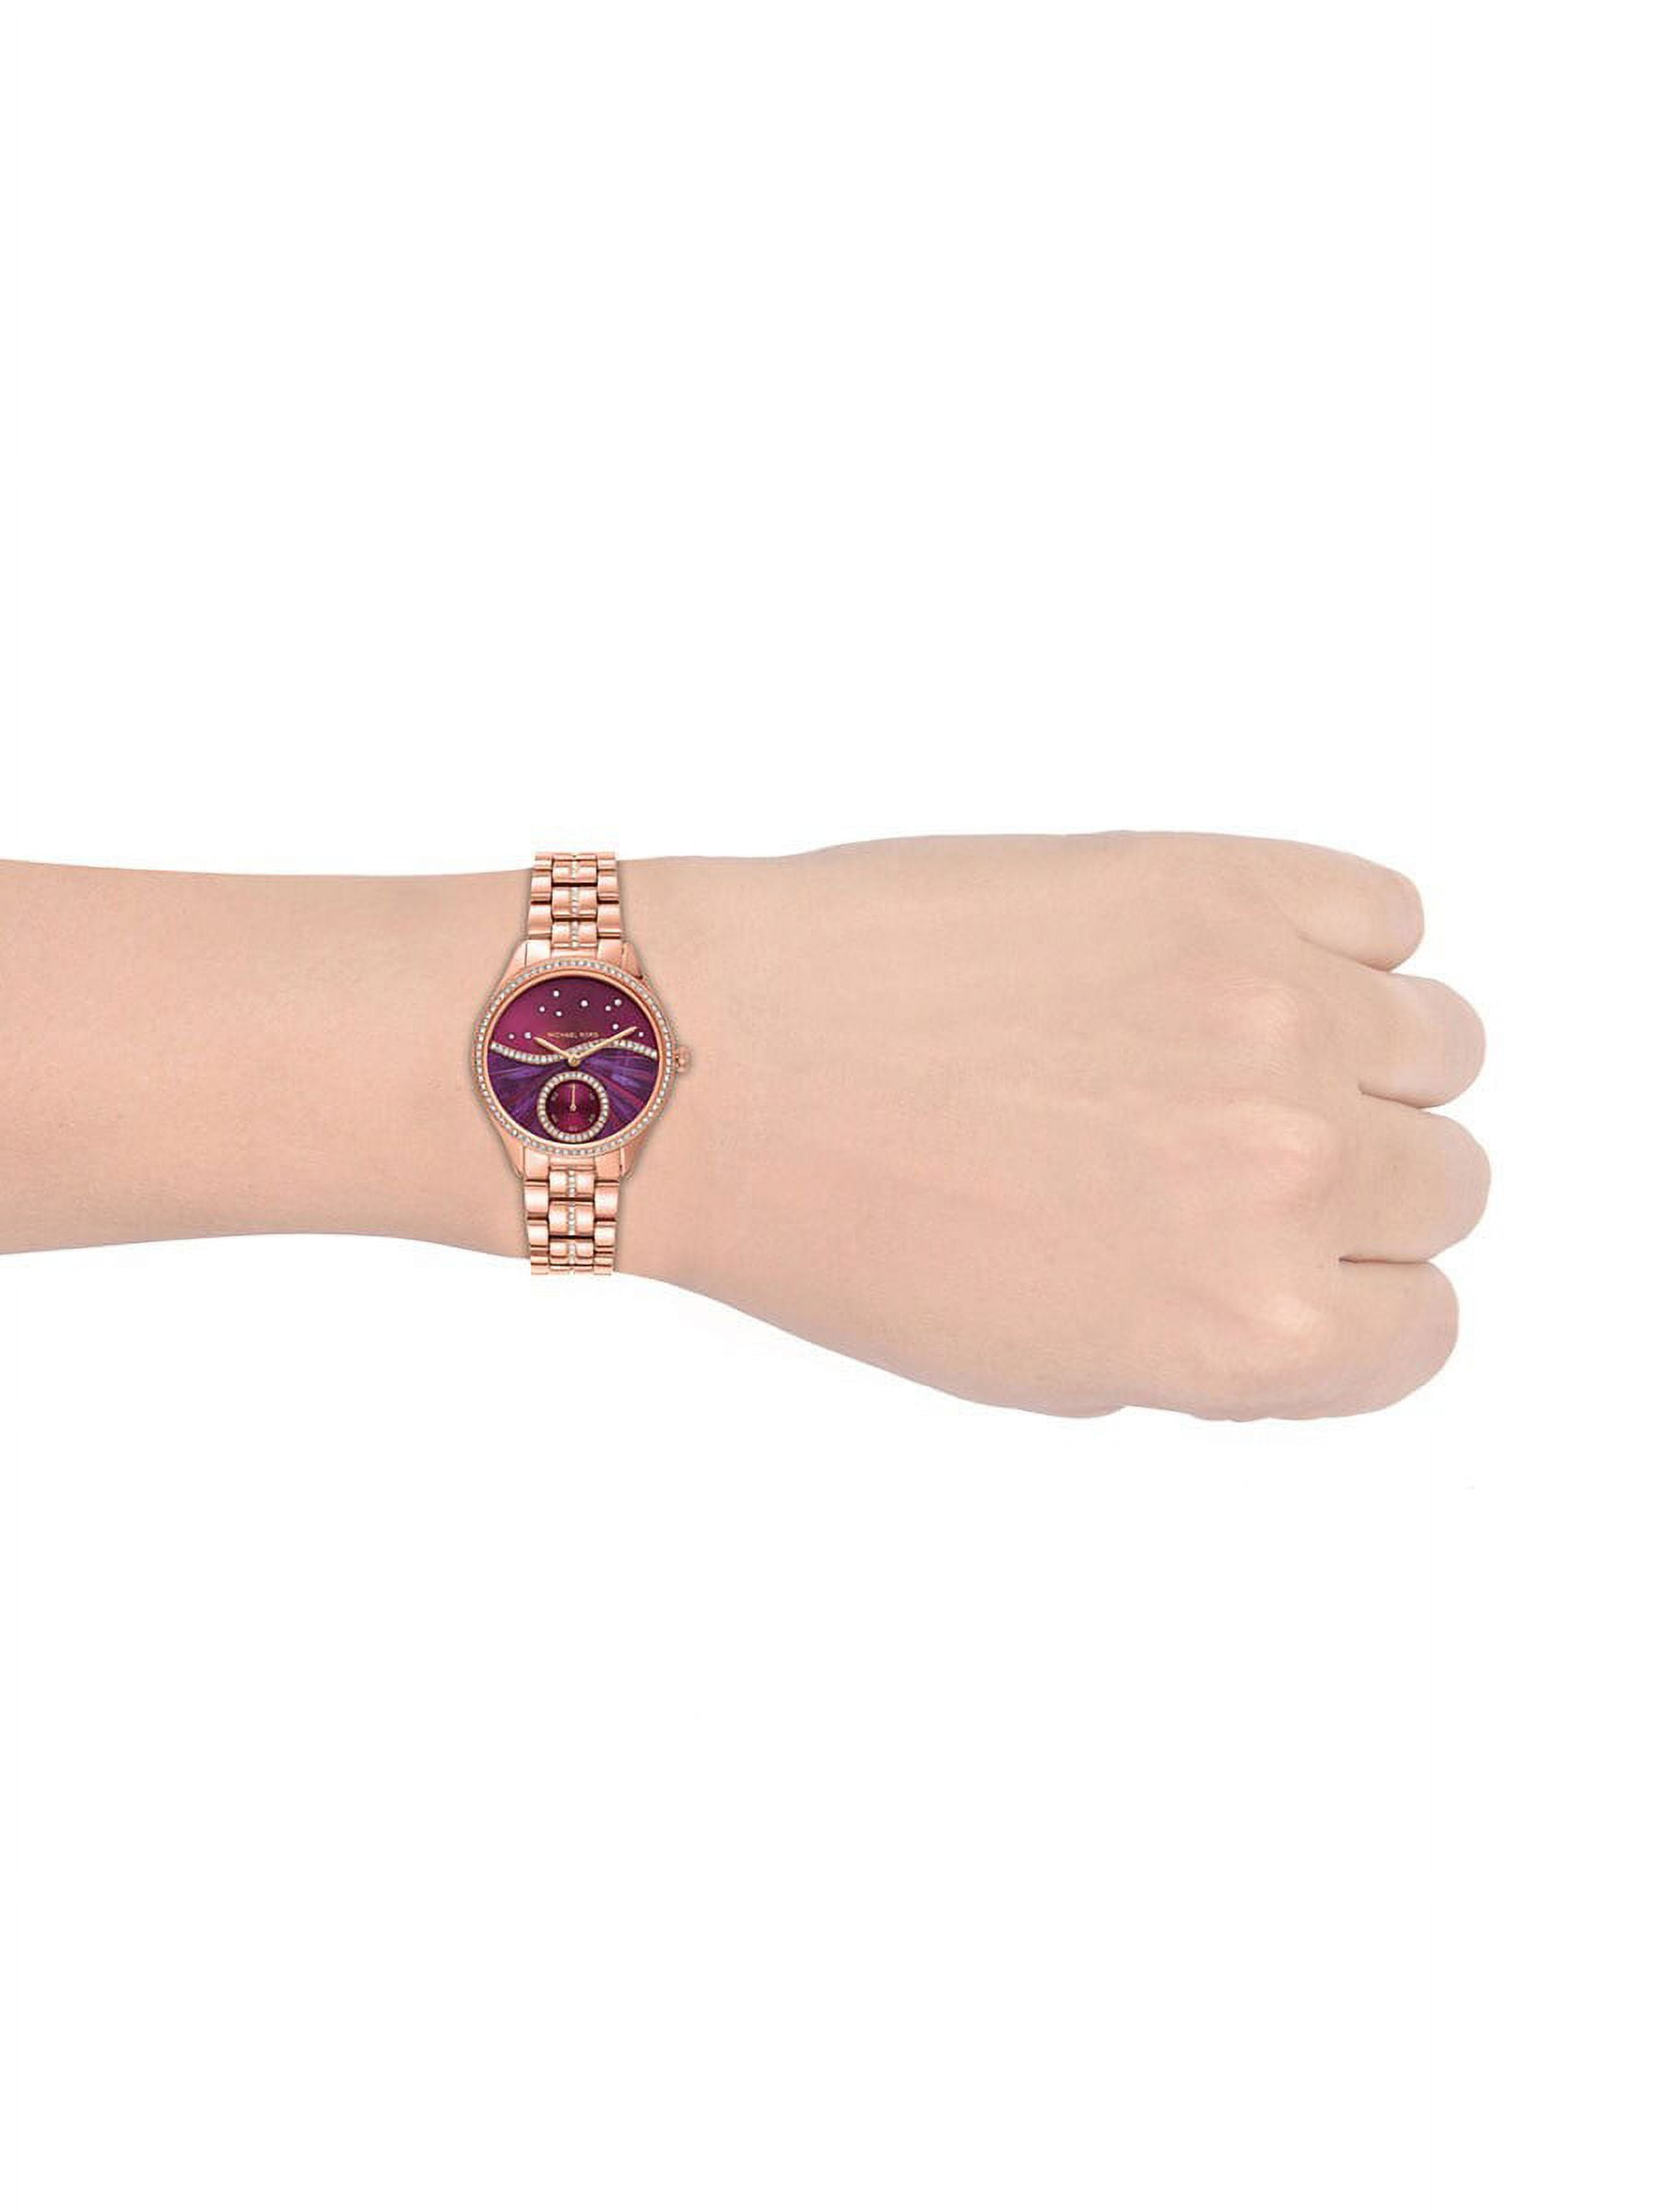 Michael Kors Women\'s Lauryn Purple Watch - Dial MK4437